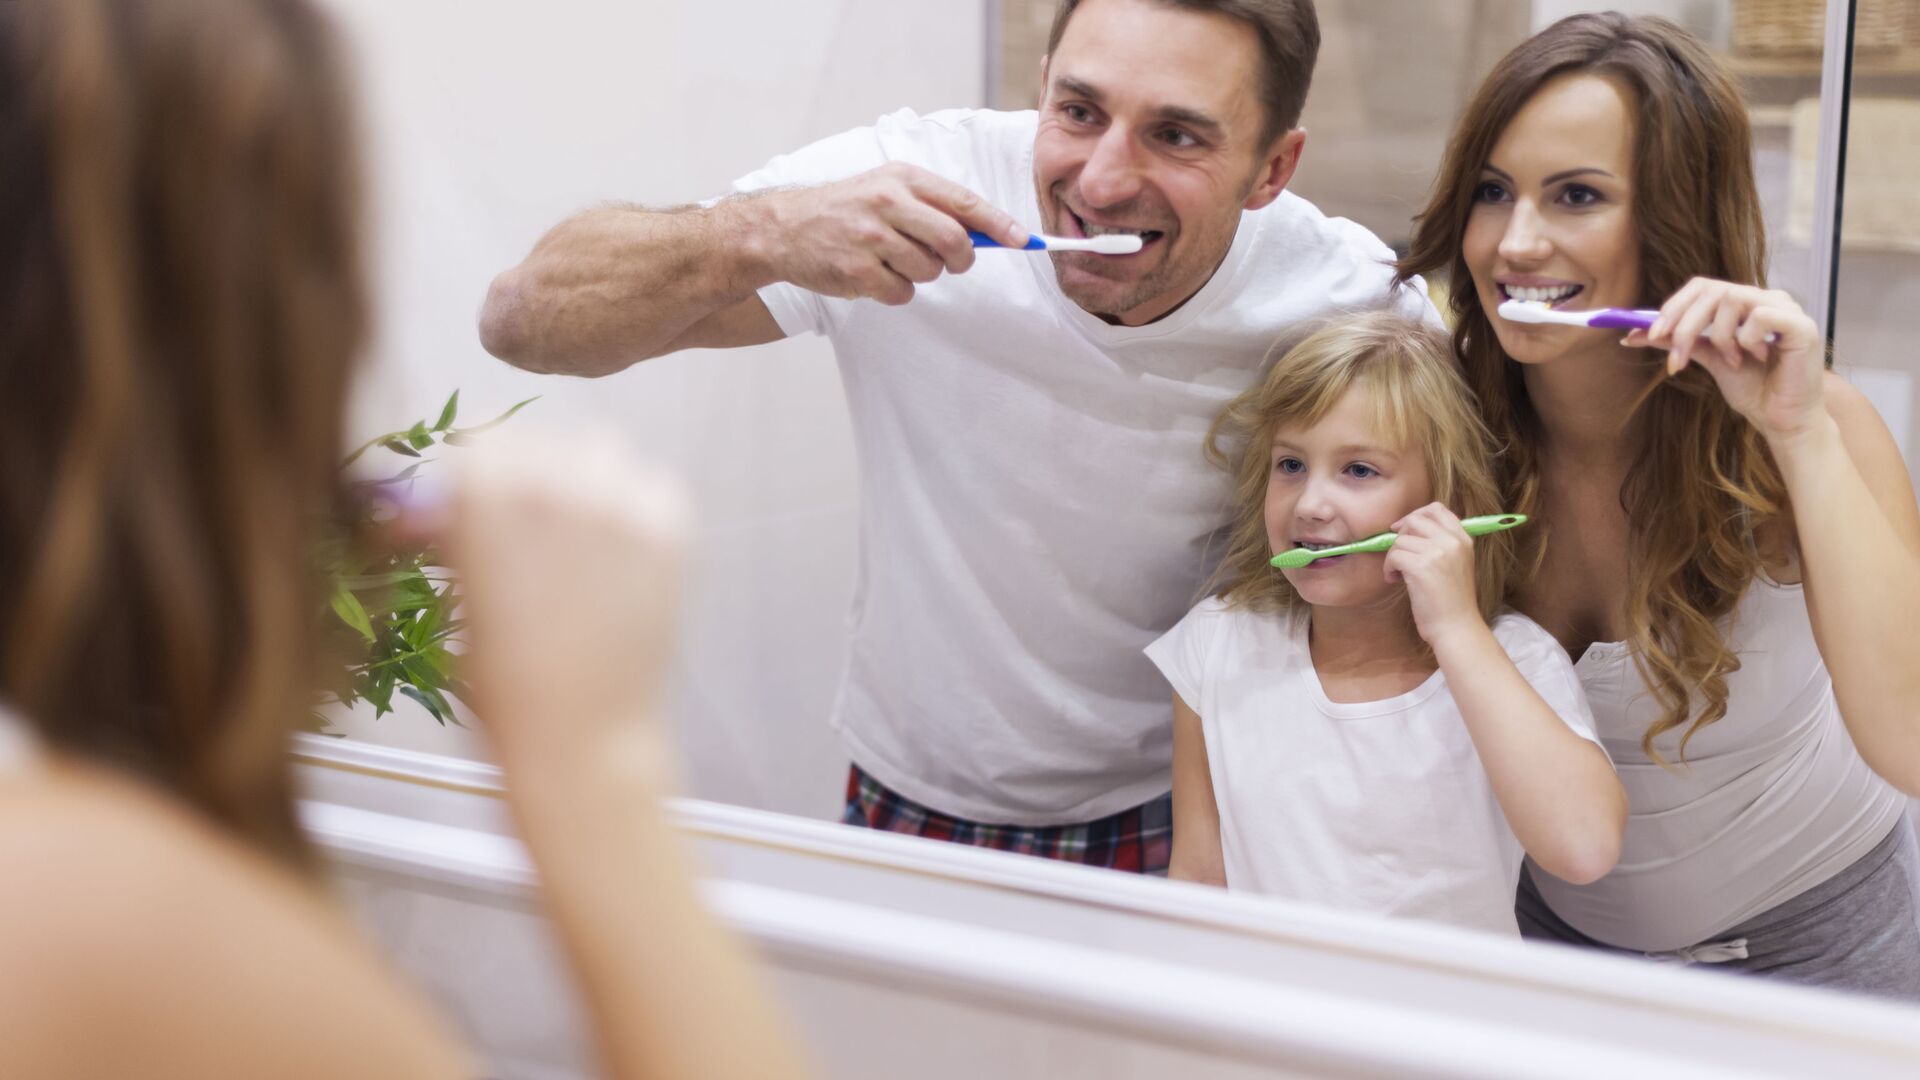 Семья чистит зубы в ванной перед зеркалом - Sputnik Латвия, 1920, 07.02.2022